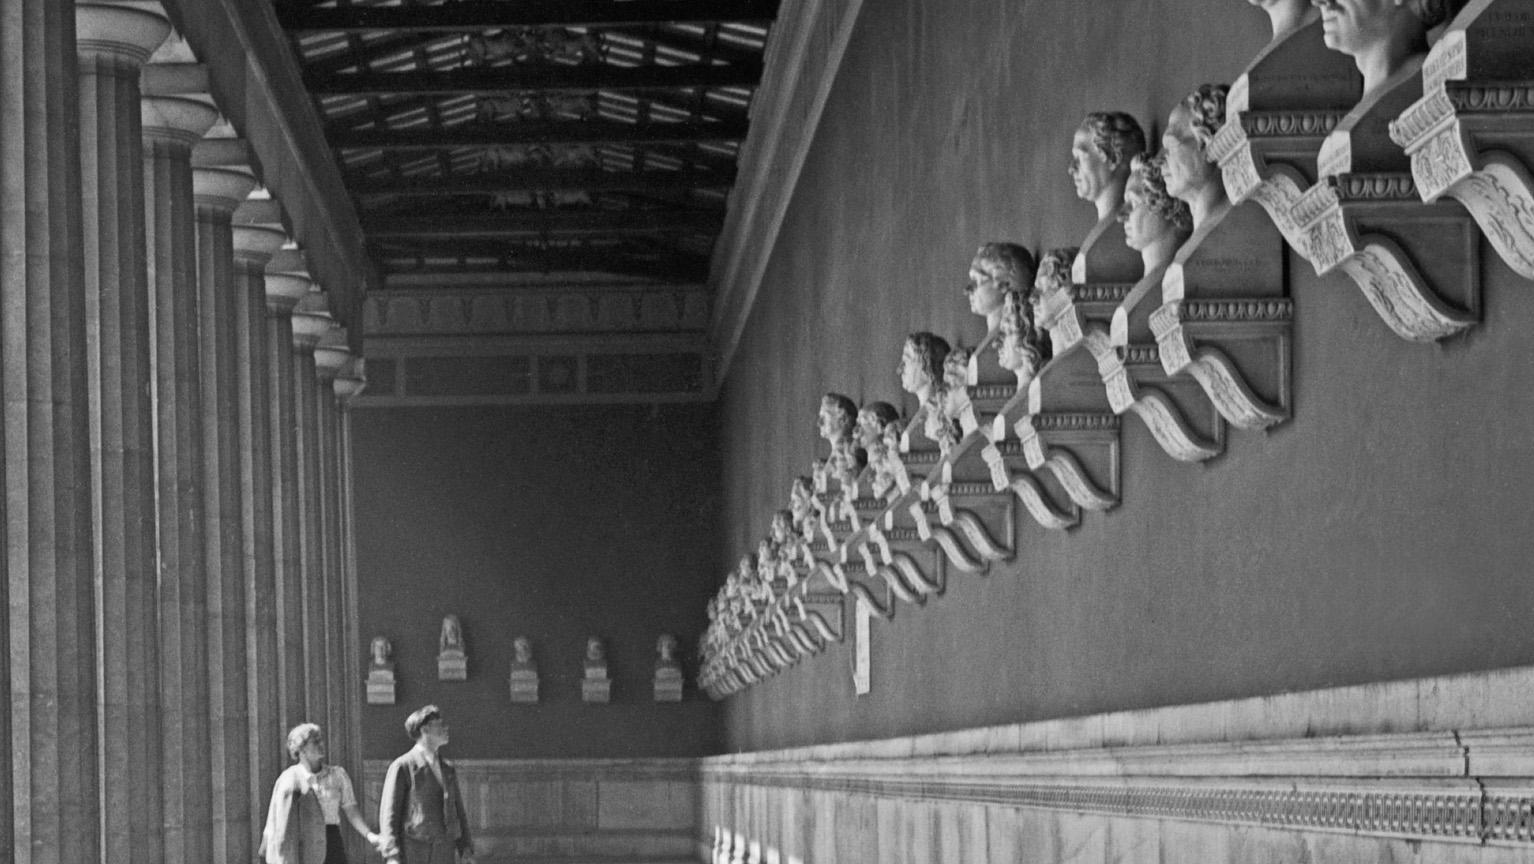 Hall of fame, Büsten von Berühmtheiten, München, Deutschland 1937, später gedruckt – Photograph von Karl Heinrich Lämmel